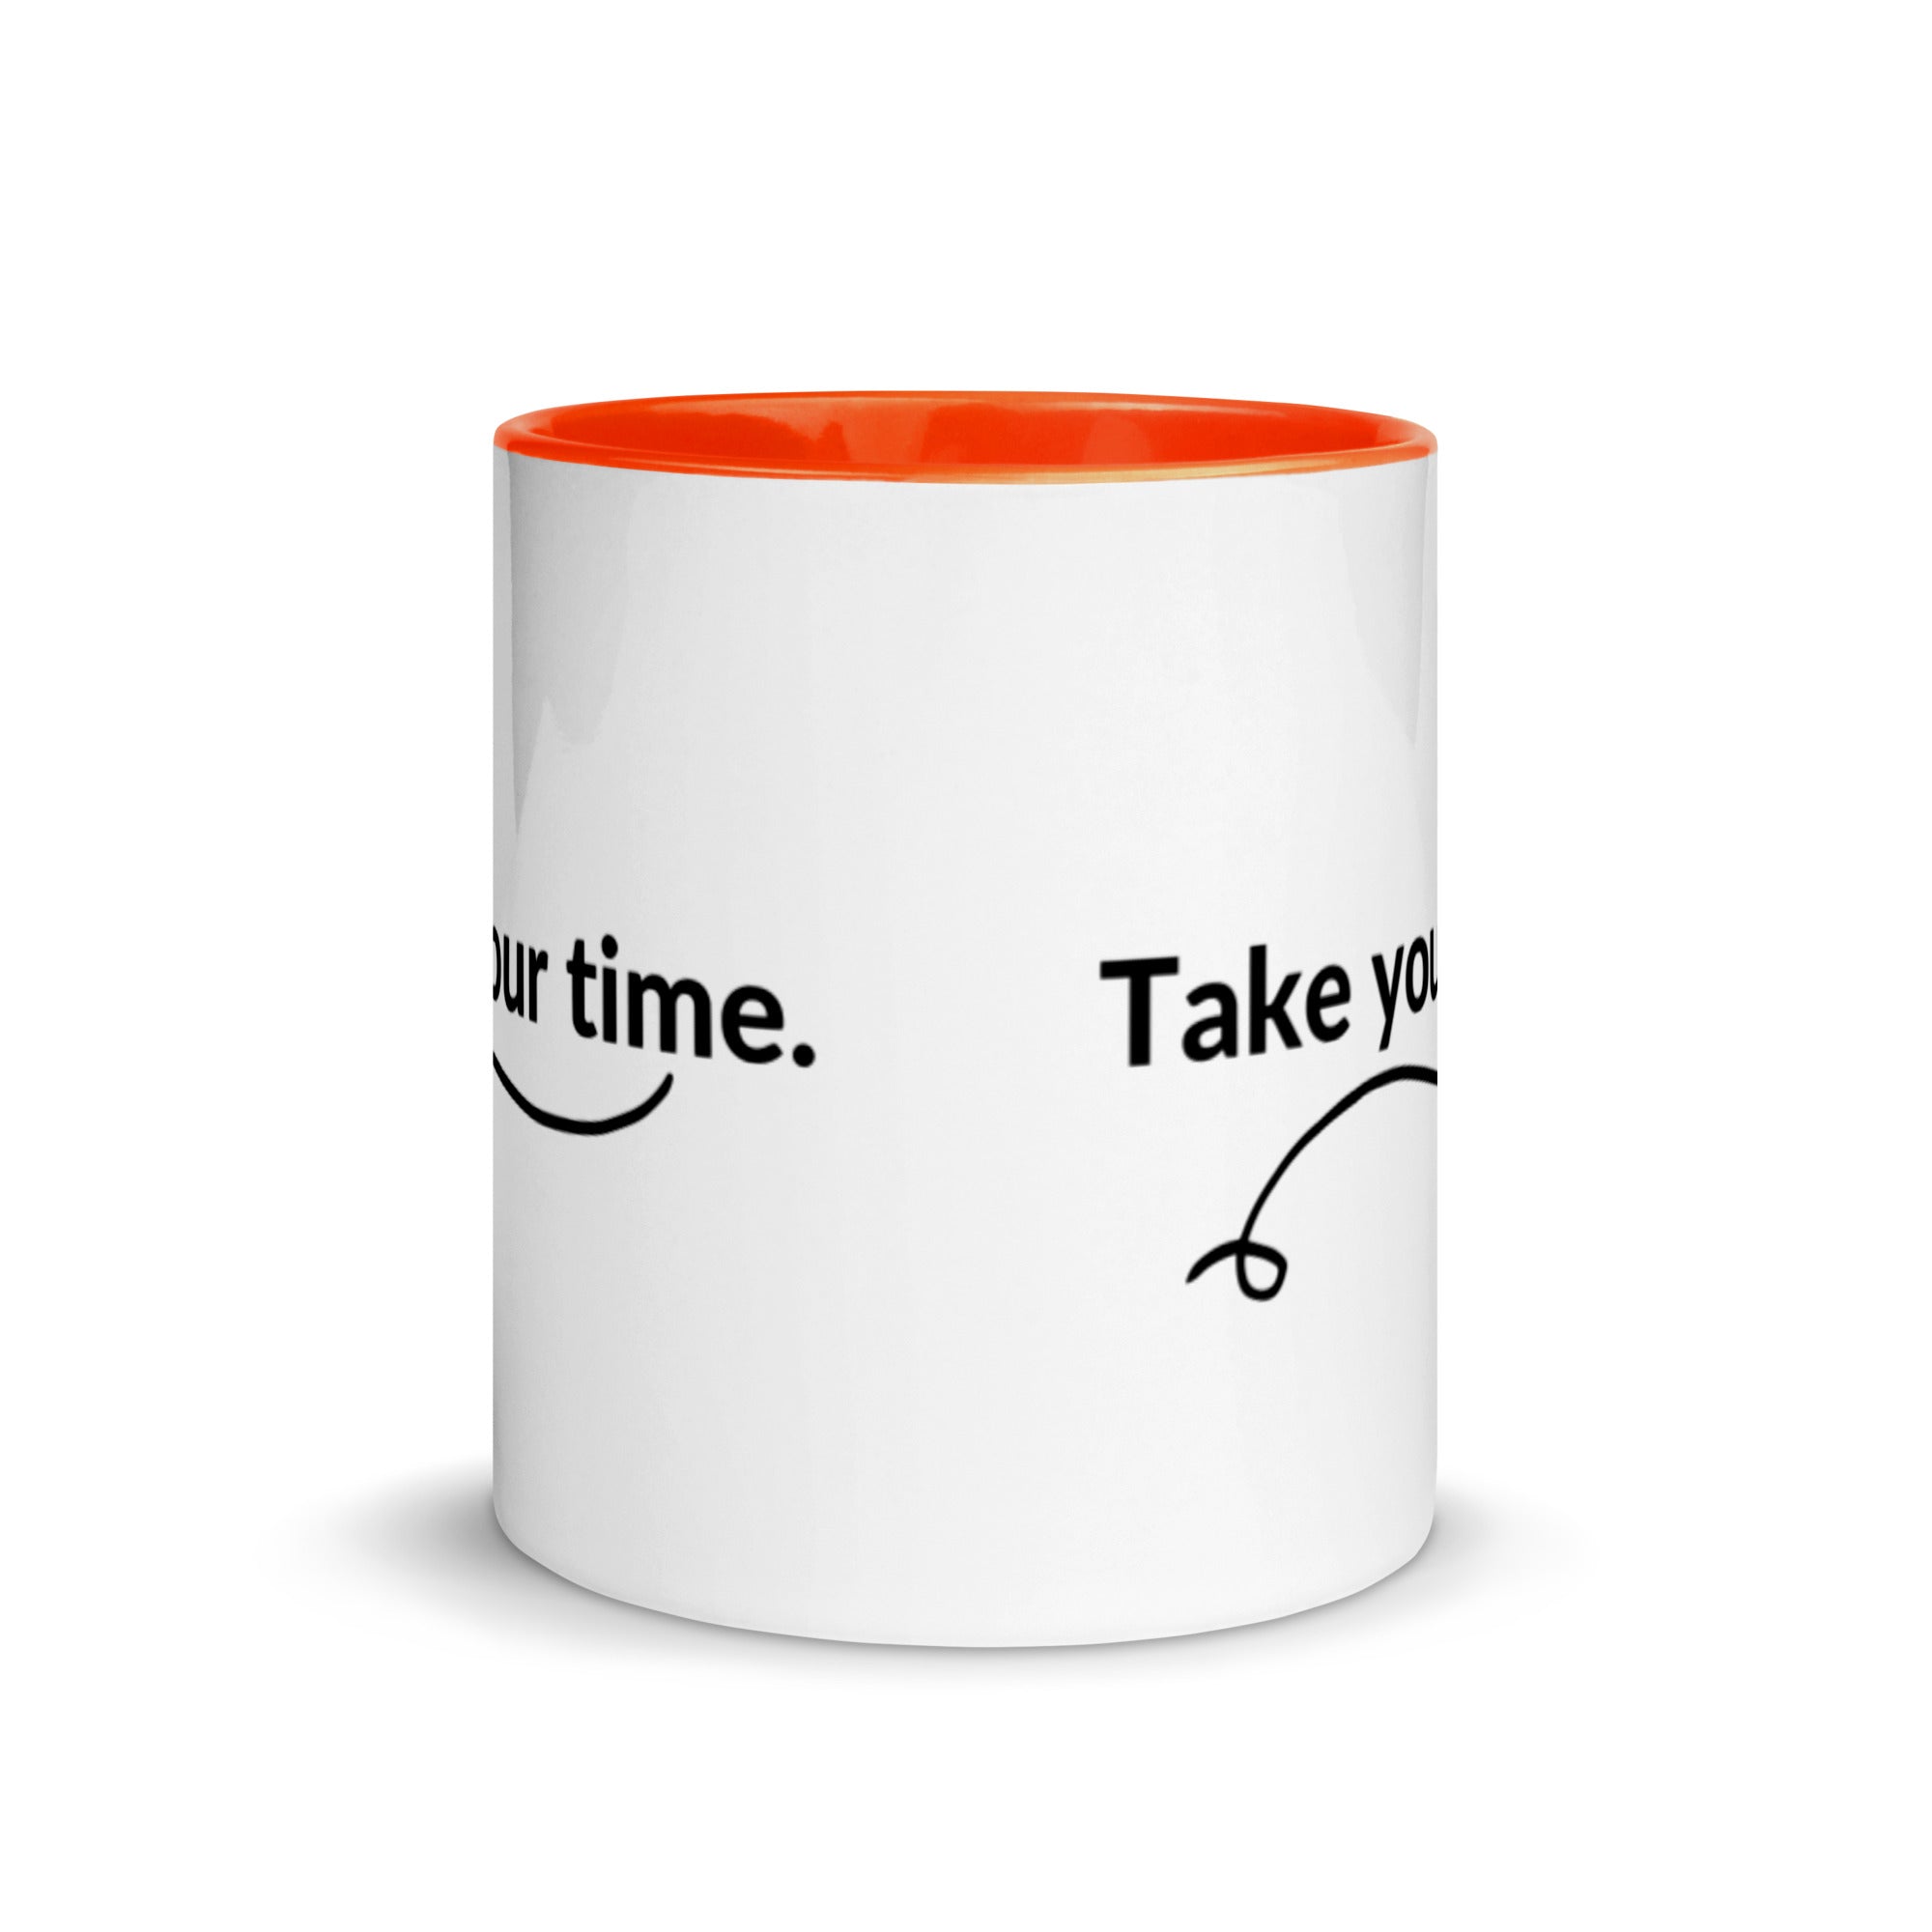 Take your Time - Mug with Color Inside